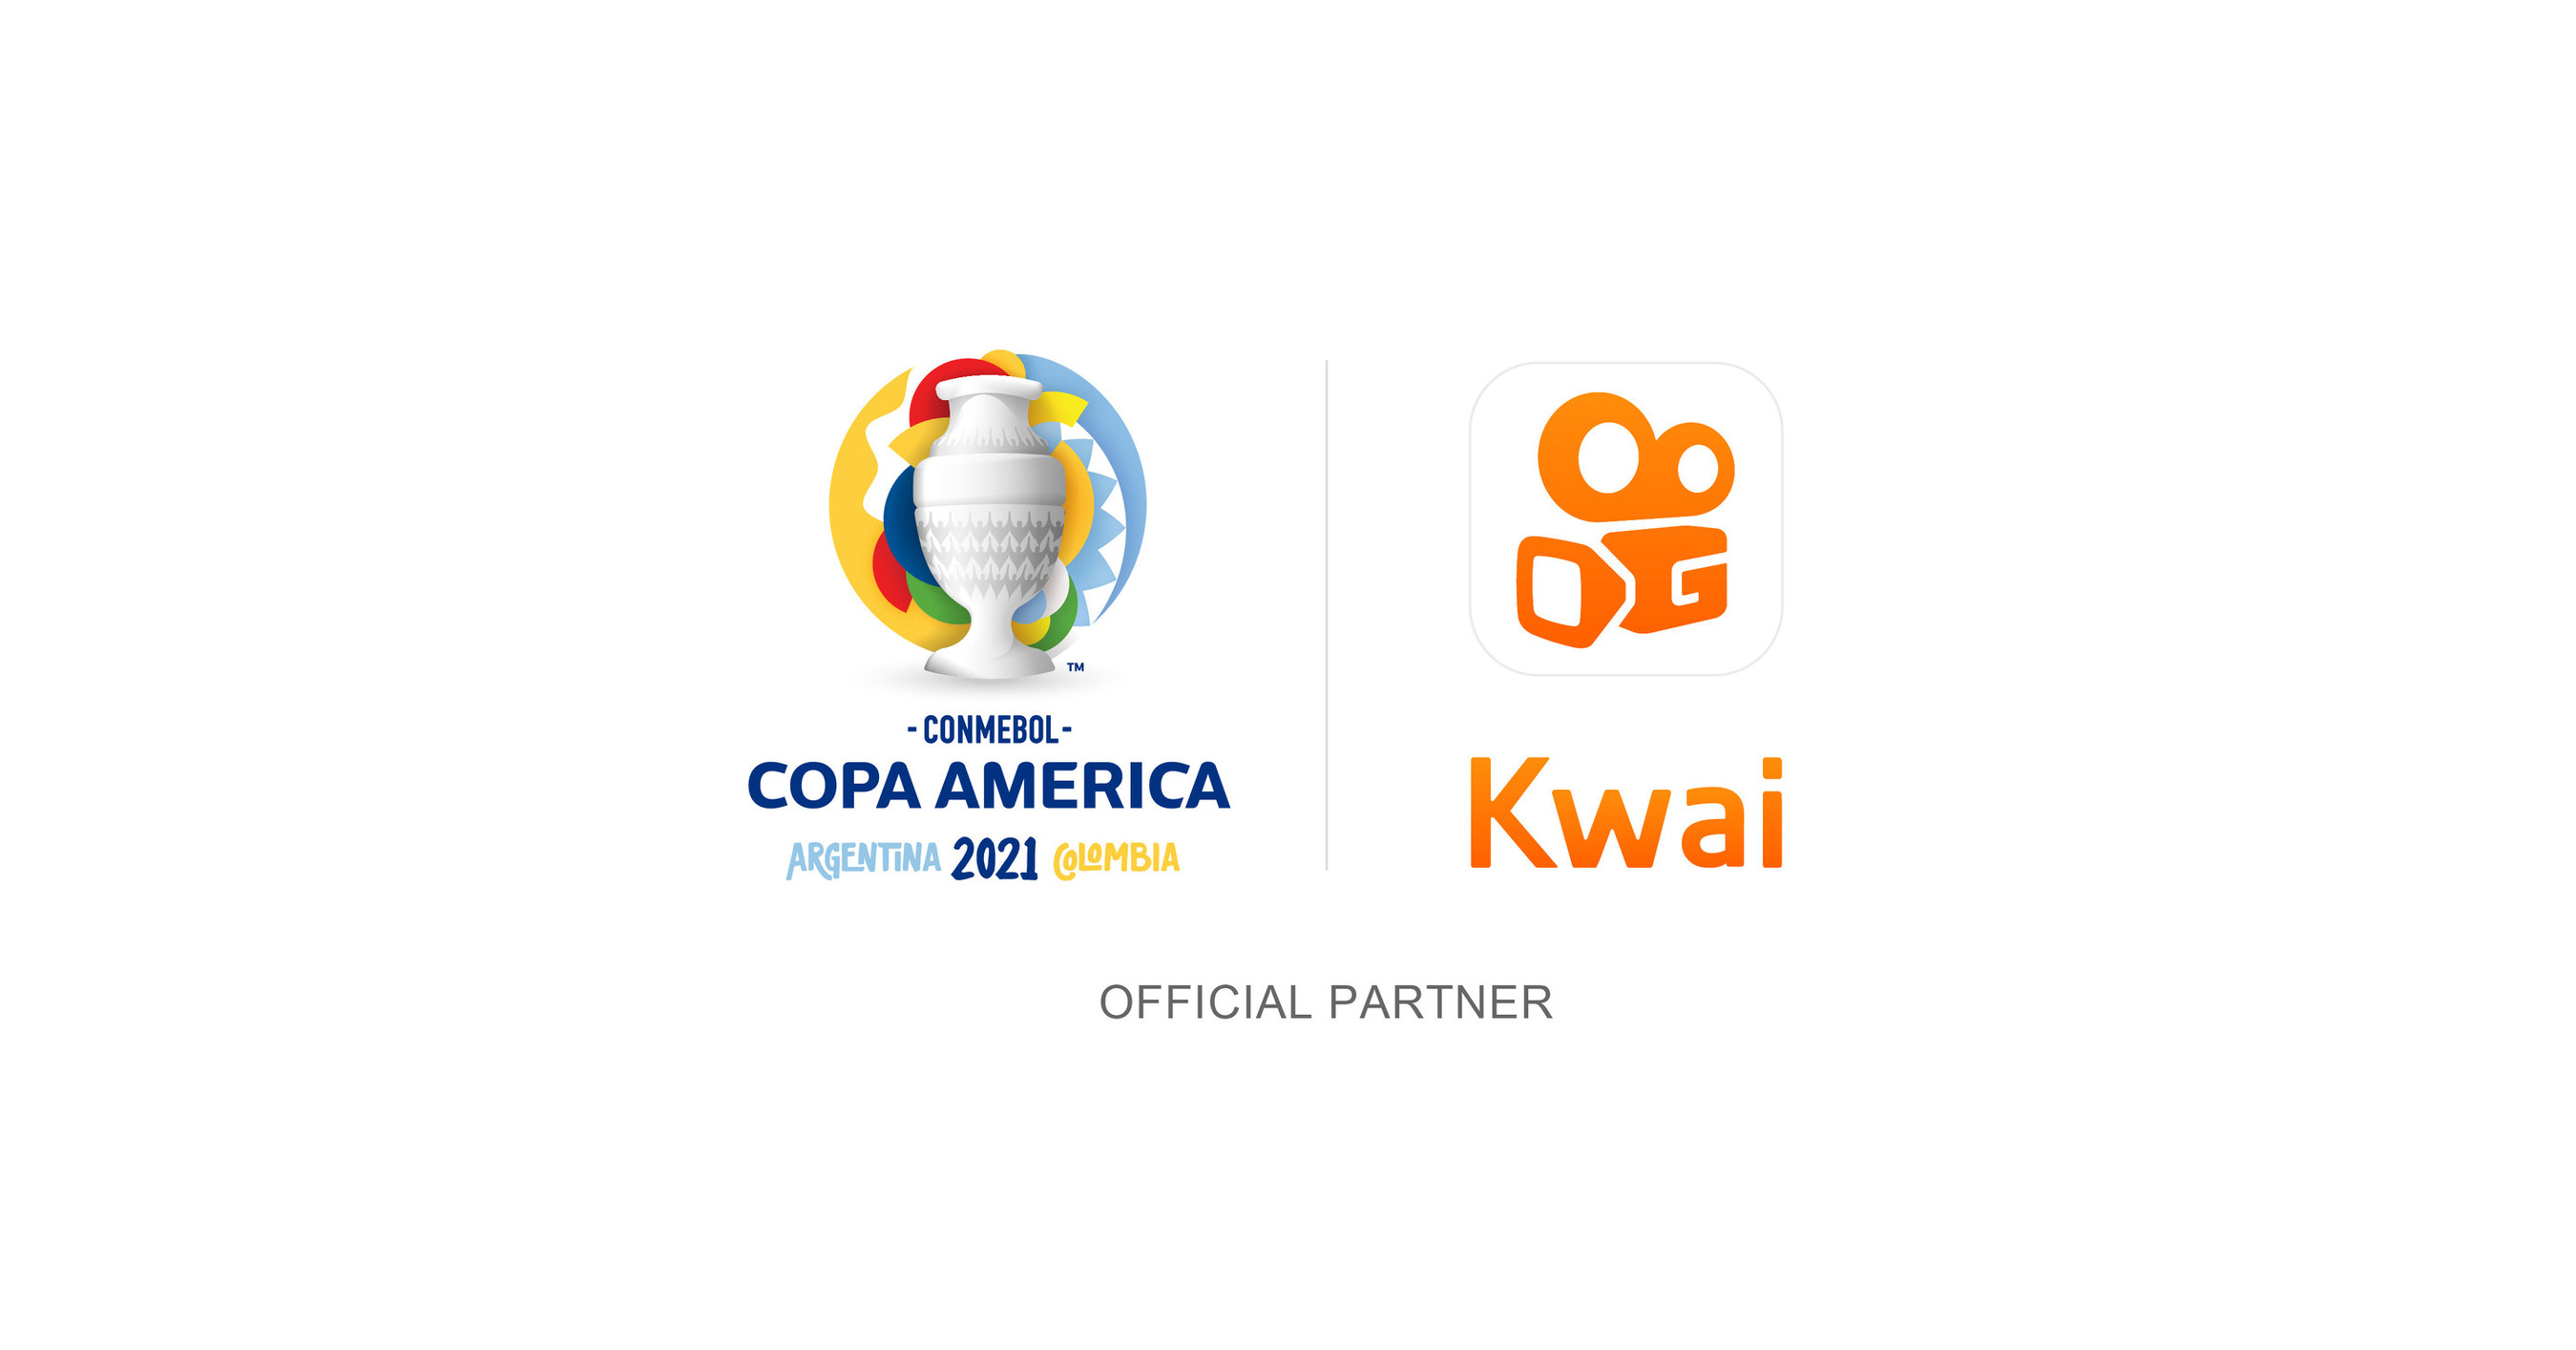 CONMEBOL fue la primera red social en la historia de Kwai en patrocinar la Copa América